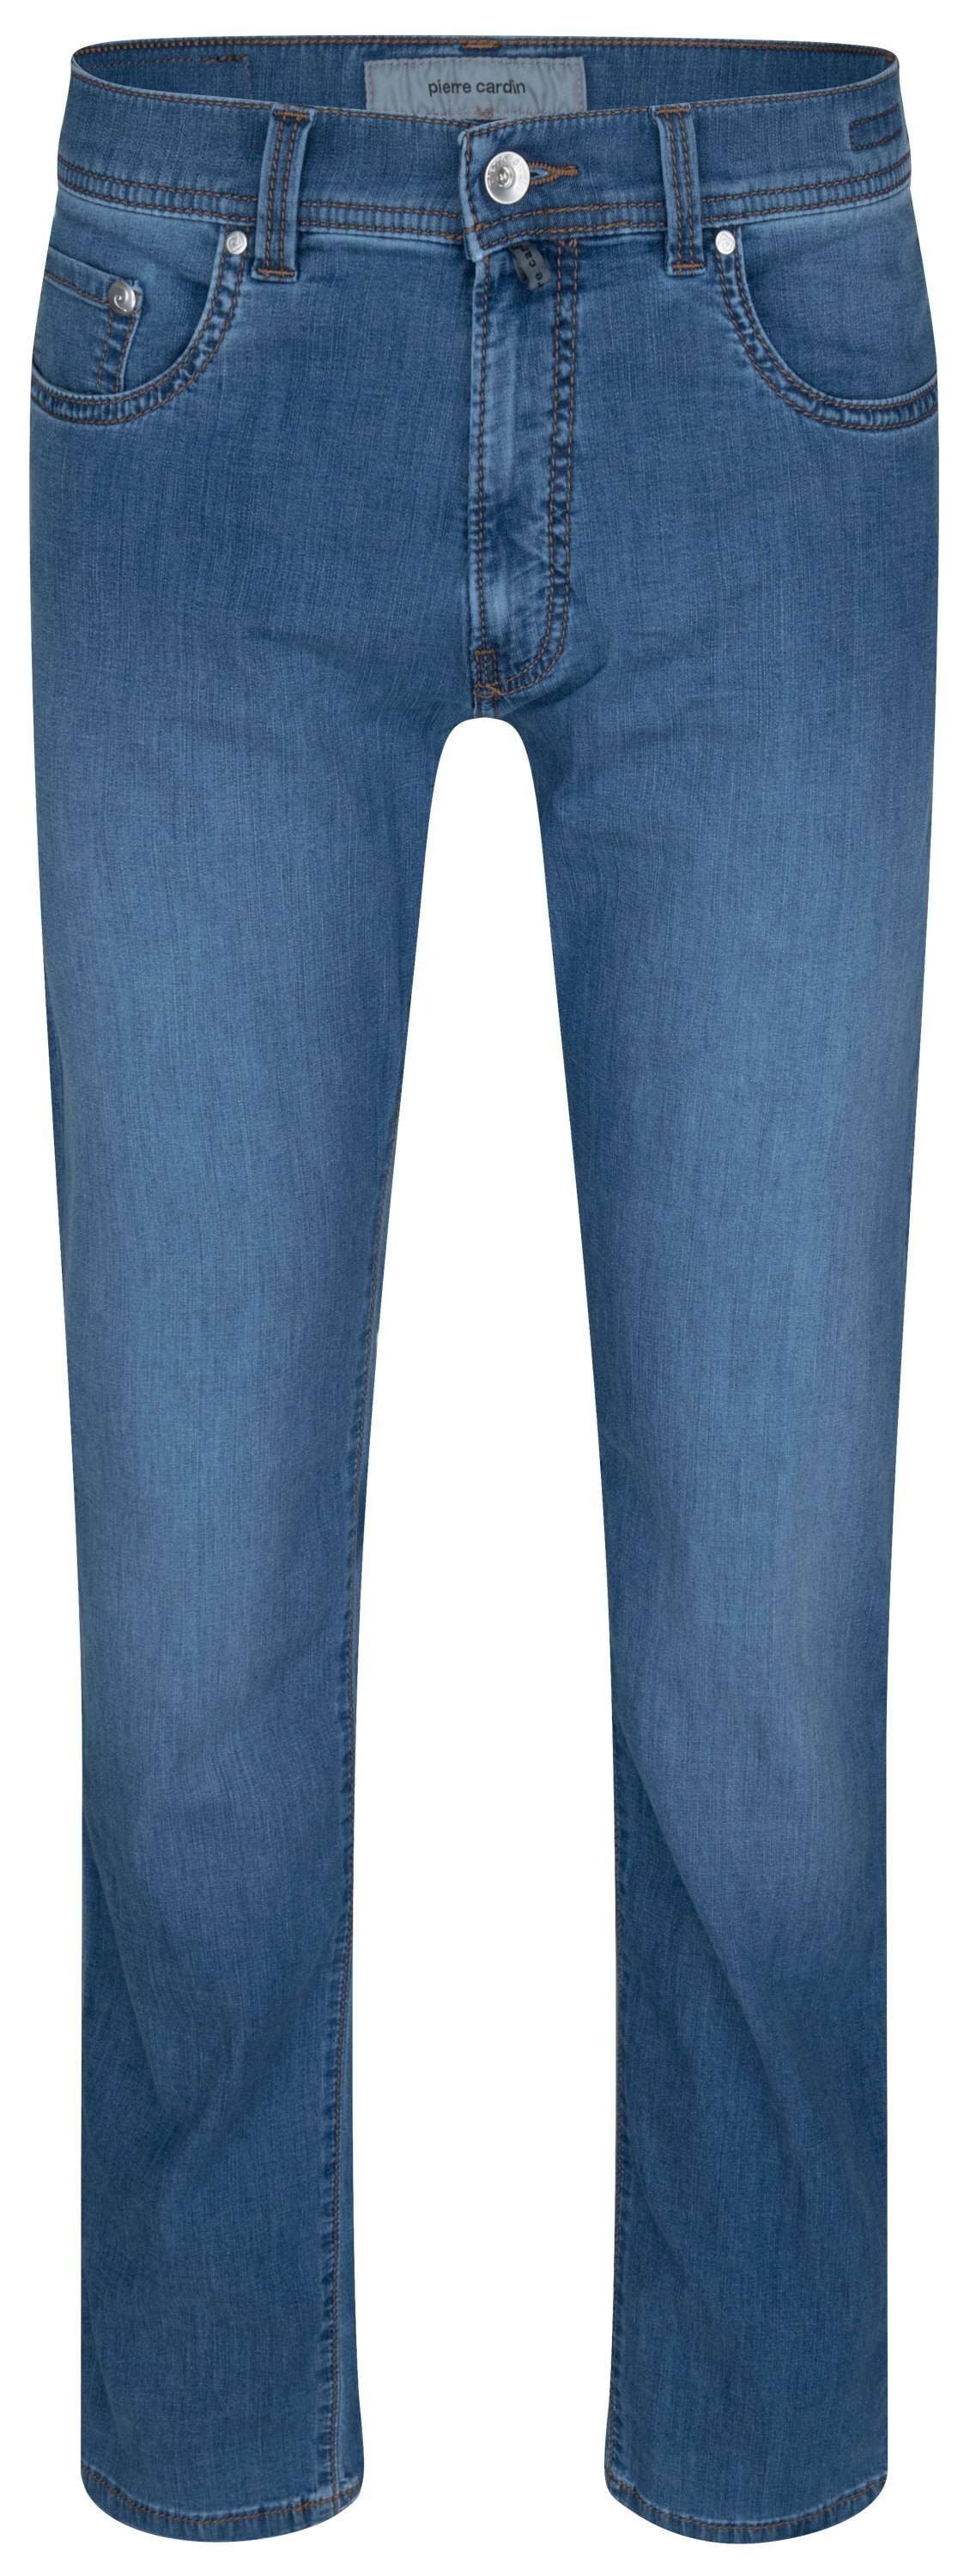 5-Pocket-Jeans CARDIN - PIERRE fashion 7730.6837 34510 FUTURE TAPERED blue Pierre ocean LYON Cardin